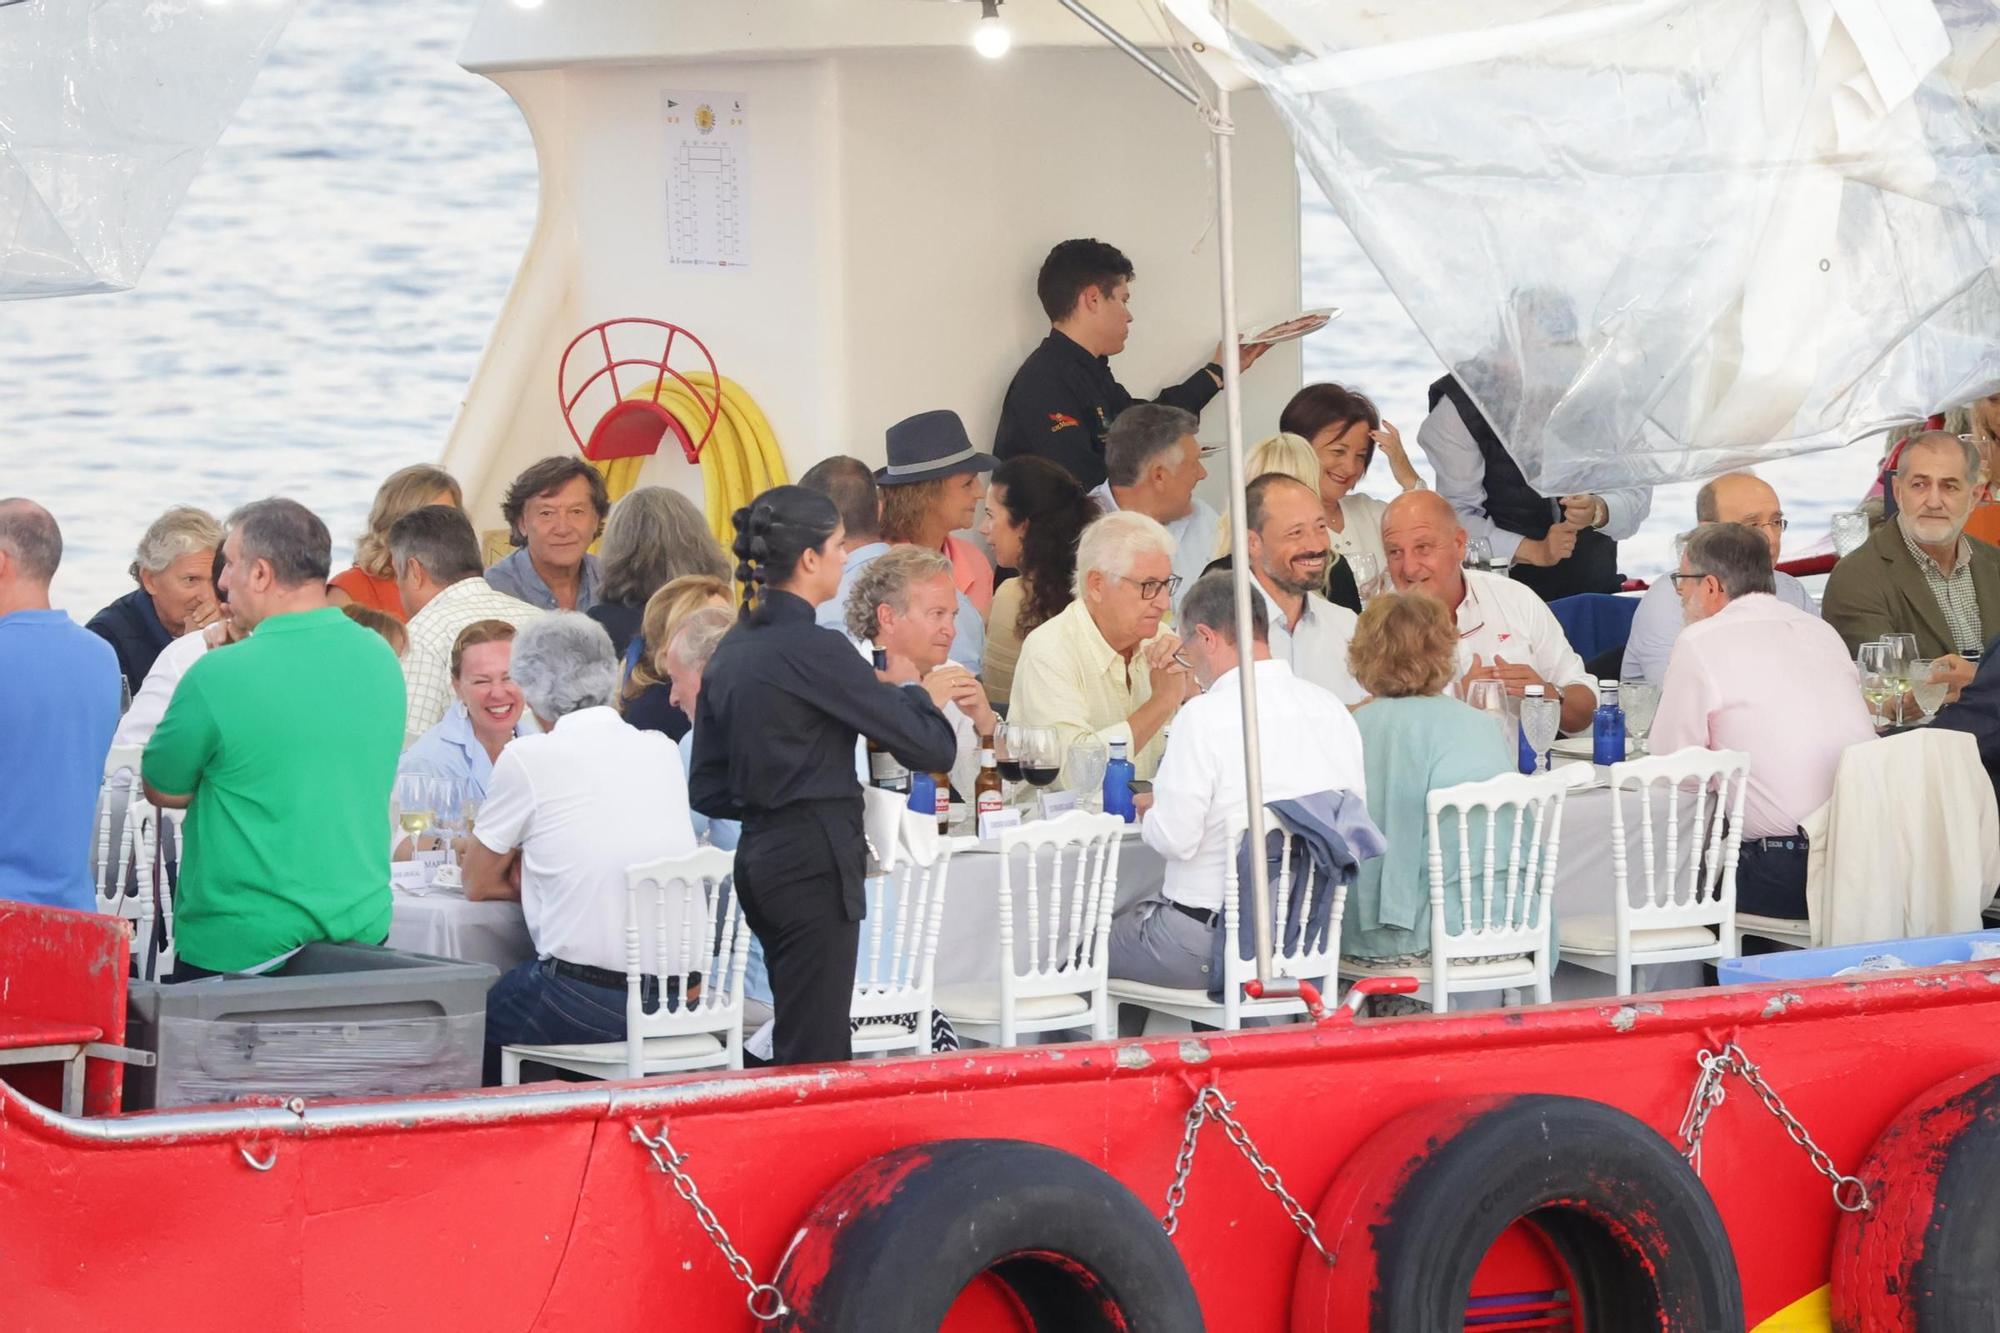 La multitudinaria cena del rey emérito y la infanta Elena a bordo de un 'bateeiro' por aguas de Sanxenxo